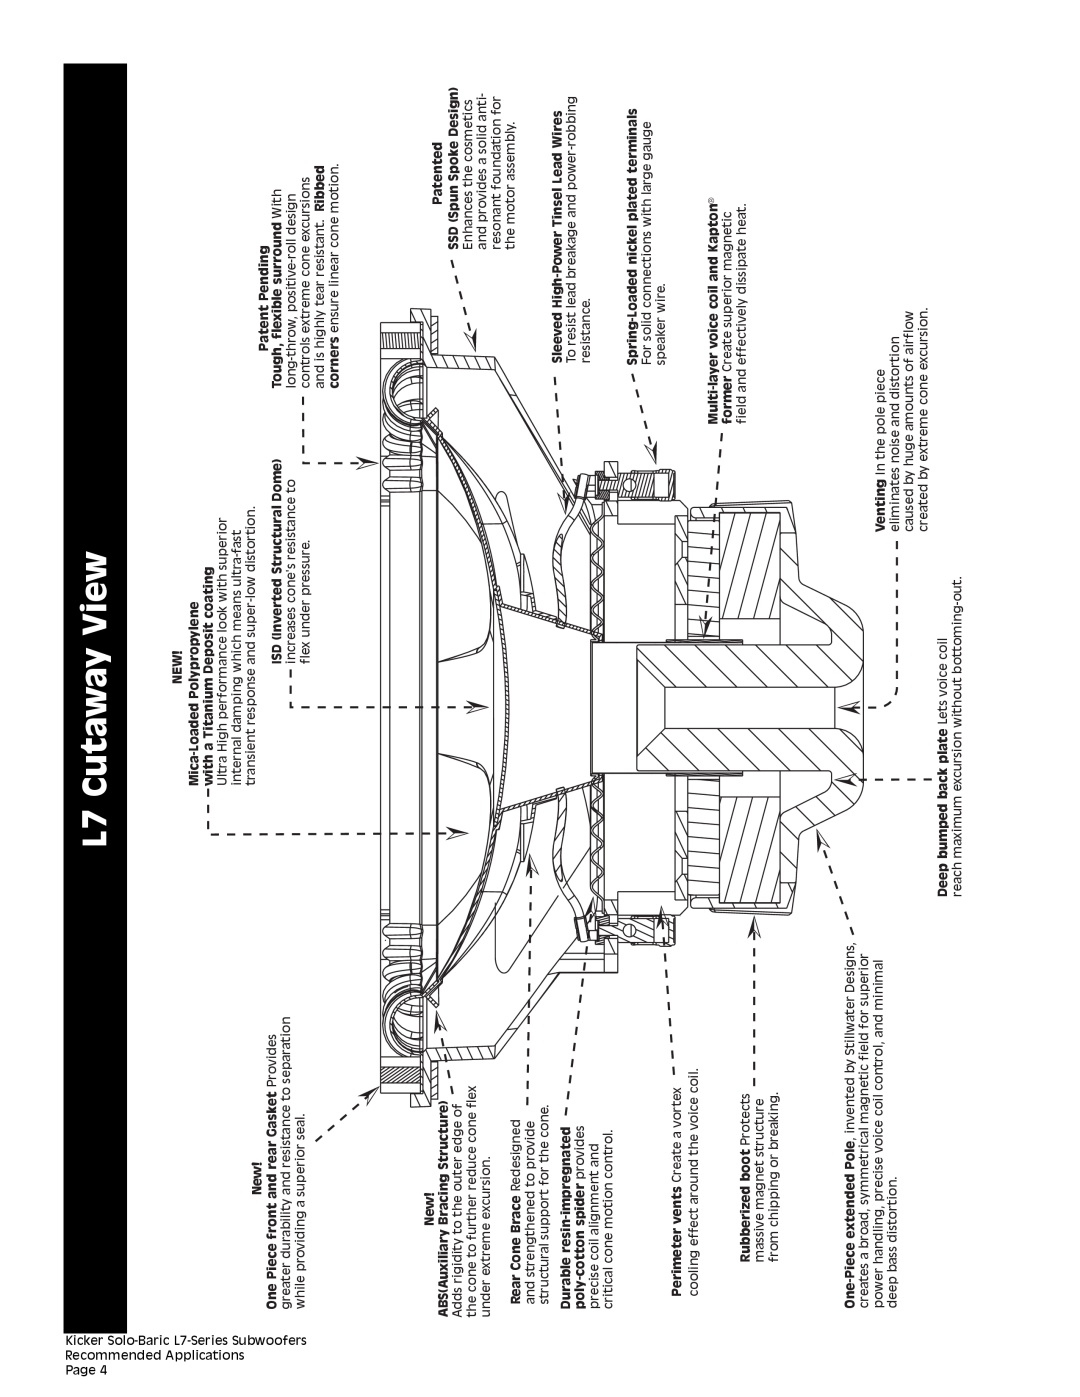 Kicker technical manual L7 Cutaway View 